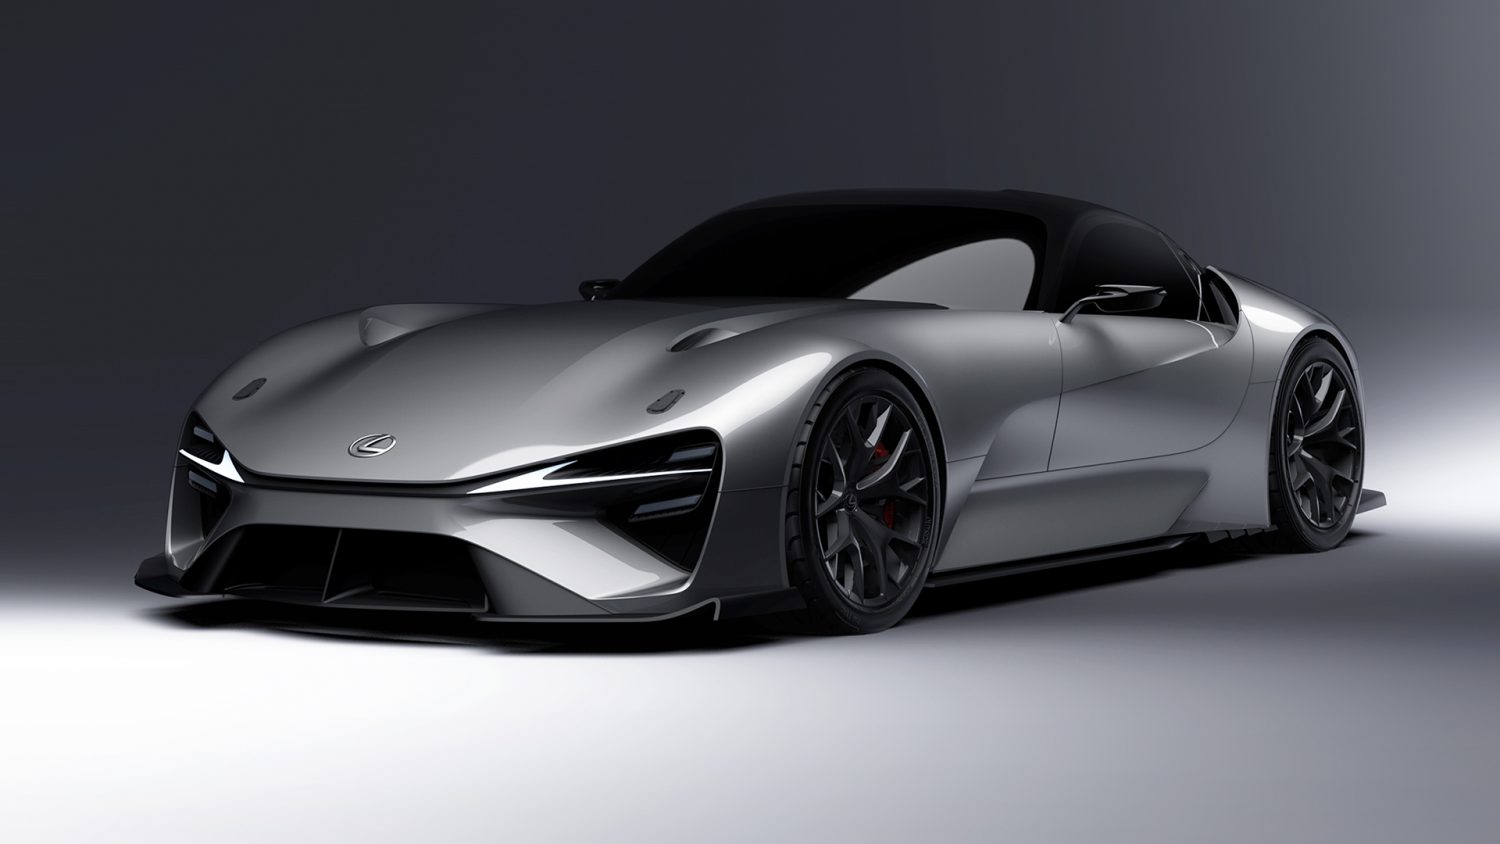 Lexus Next-Gen Battery Electric Sport Concept Featured in Online Gallery